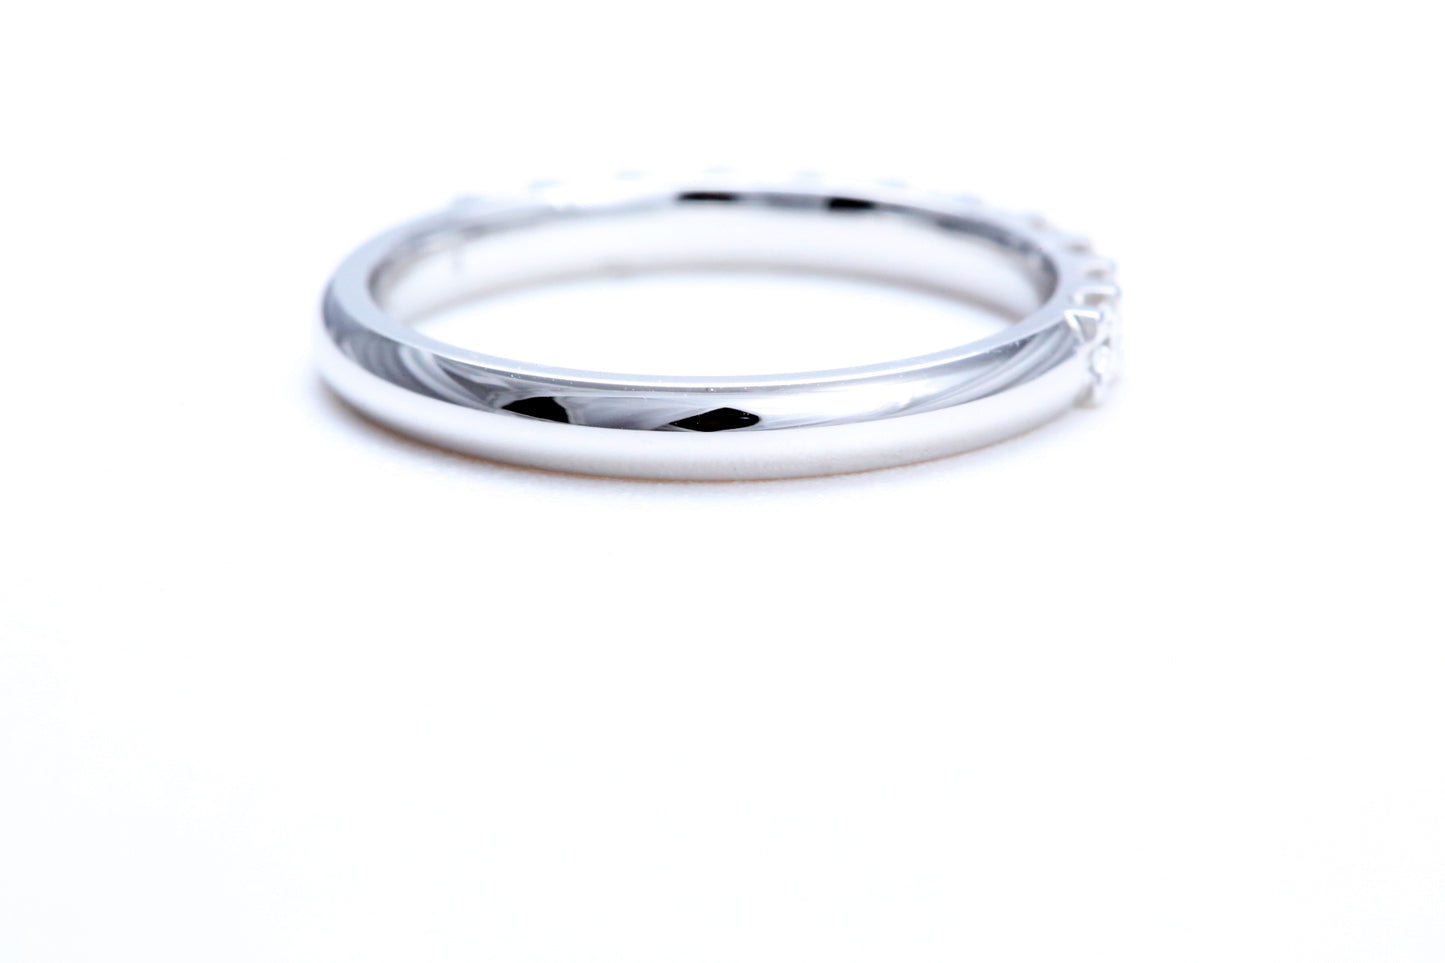 14K 白金極簡主義密釘鑽石戒指，總重量為 1/2 克拉